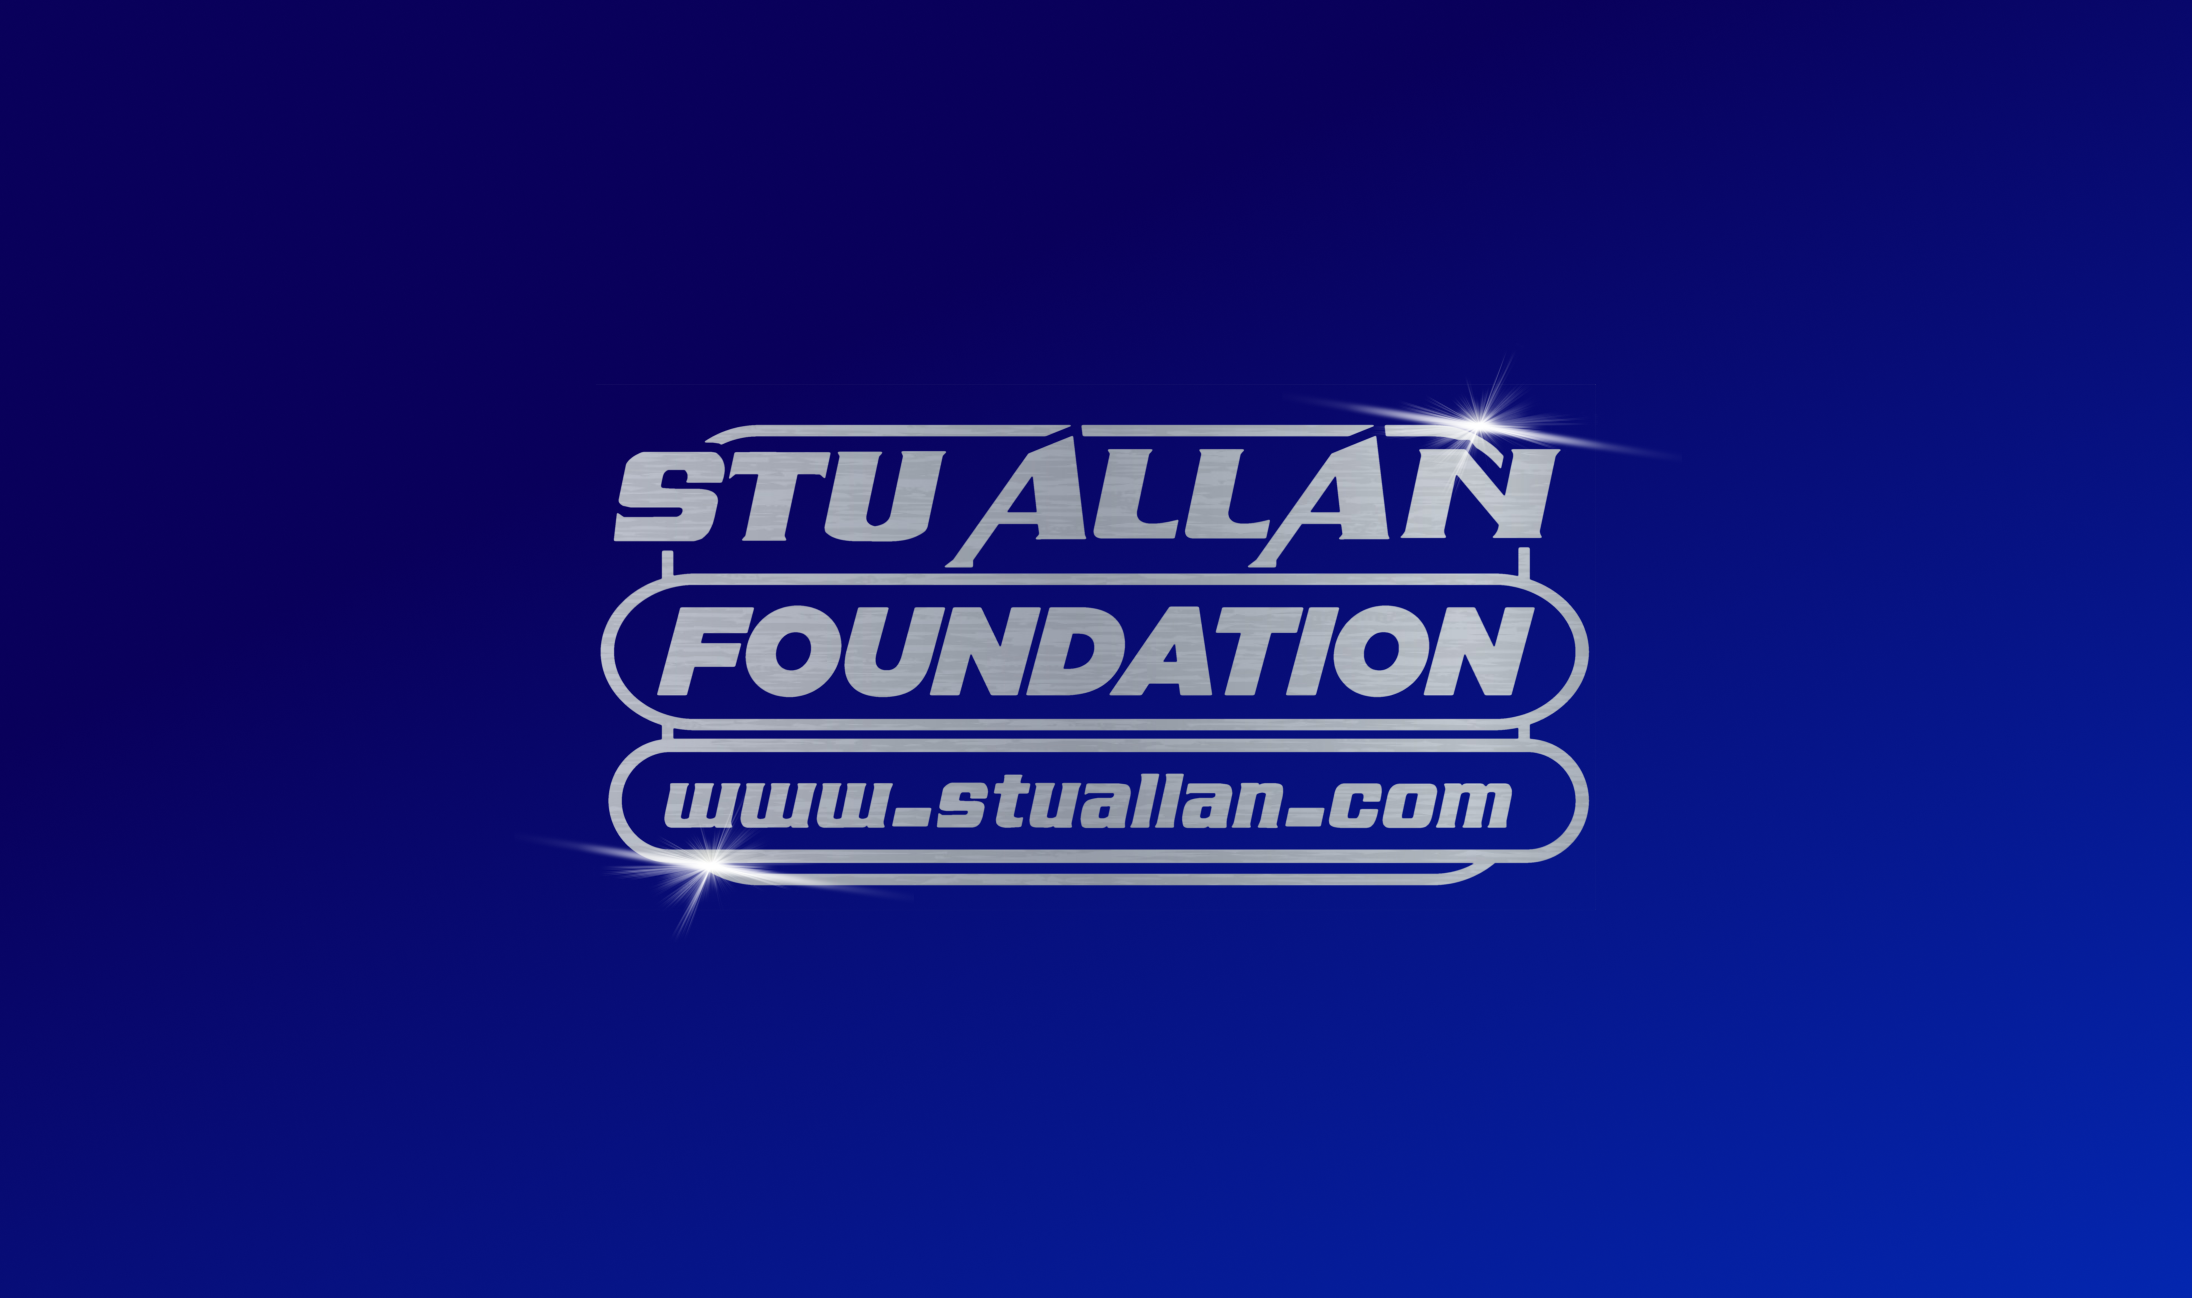 Stu allan mob logo